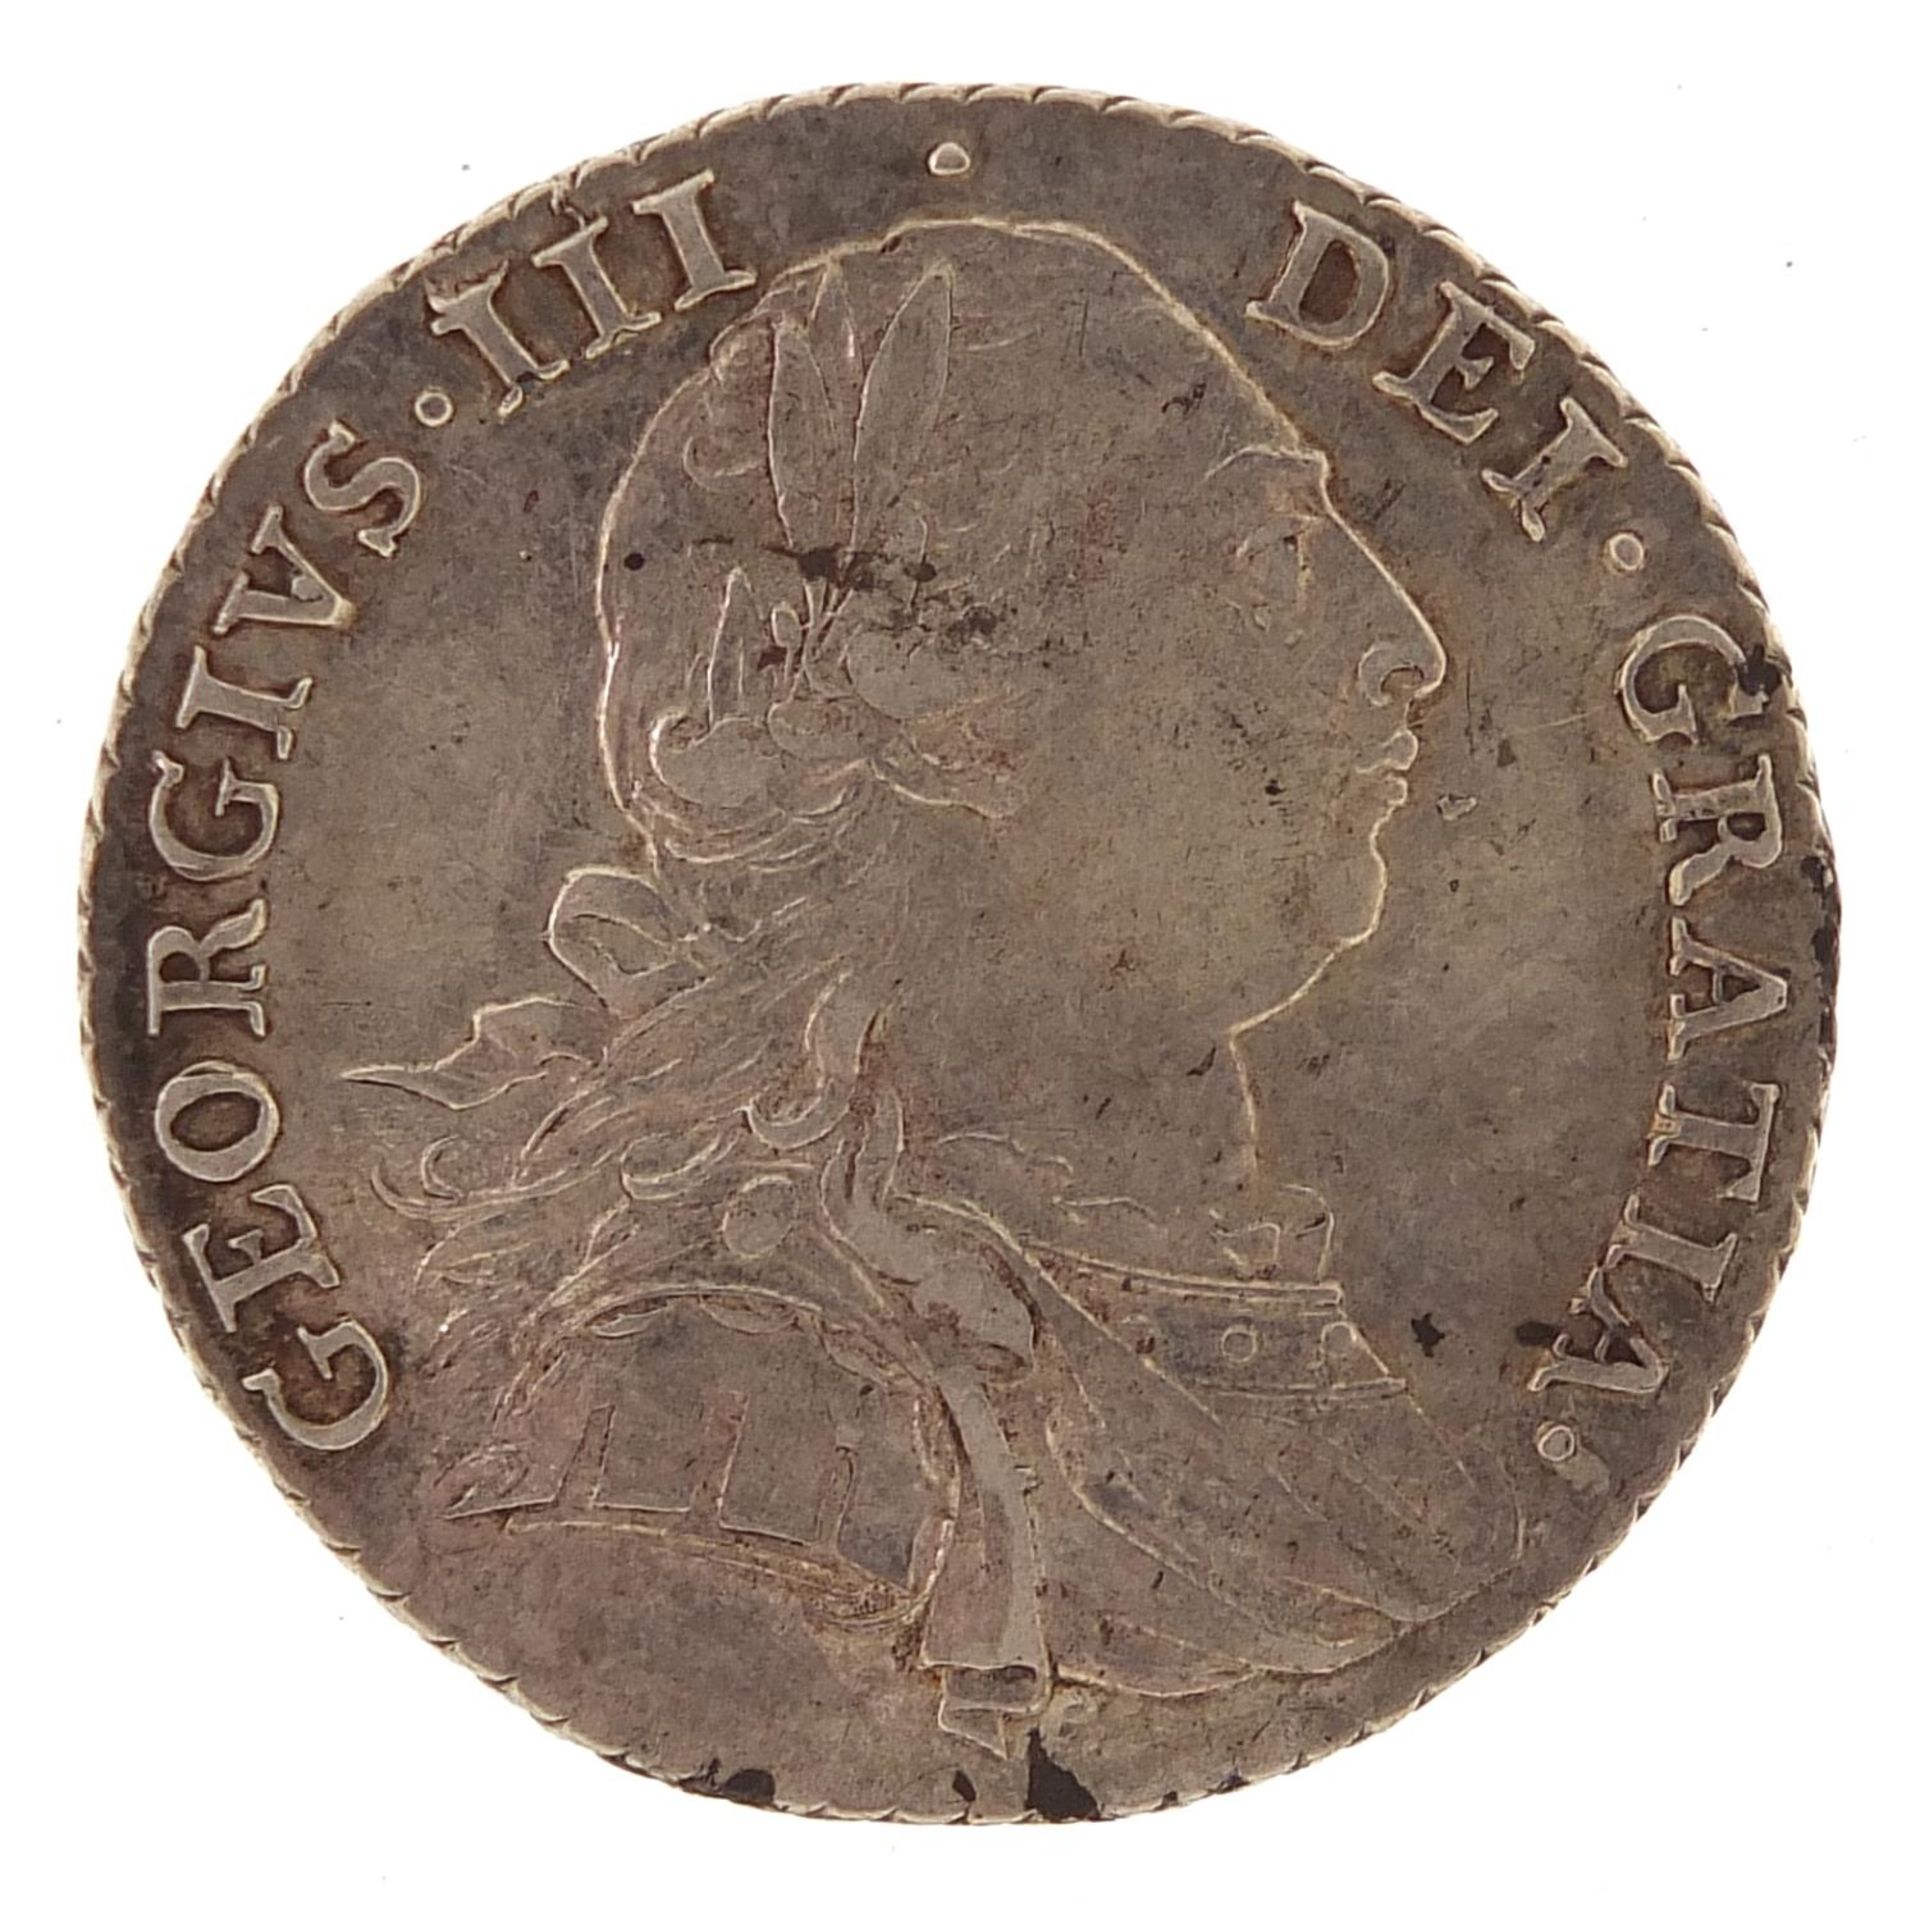 George III 1787 shilling - Image 2 of 2